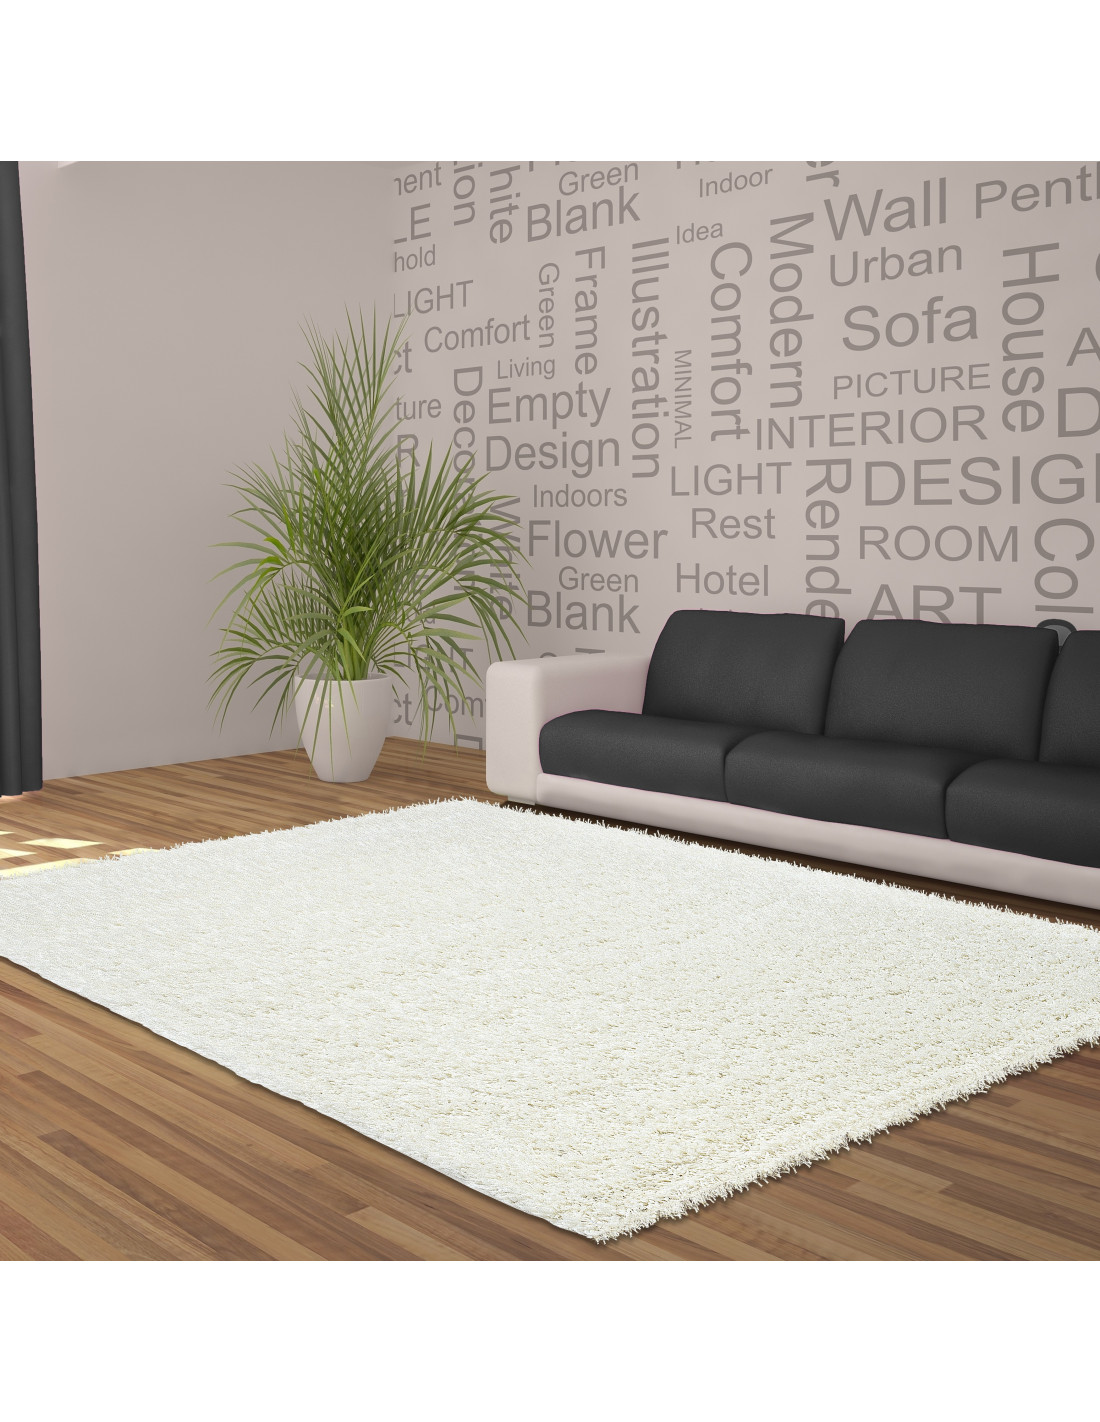 Hoogpolig tapijt, hoogpolig, hoogpolig, hoogpolig tapijt in de woonkamer, effen kleur, poolhoogte 5 cm, crème